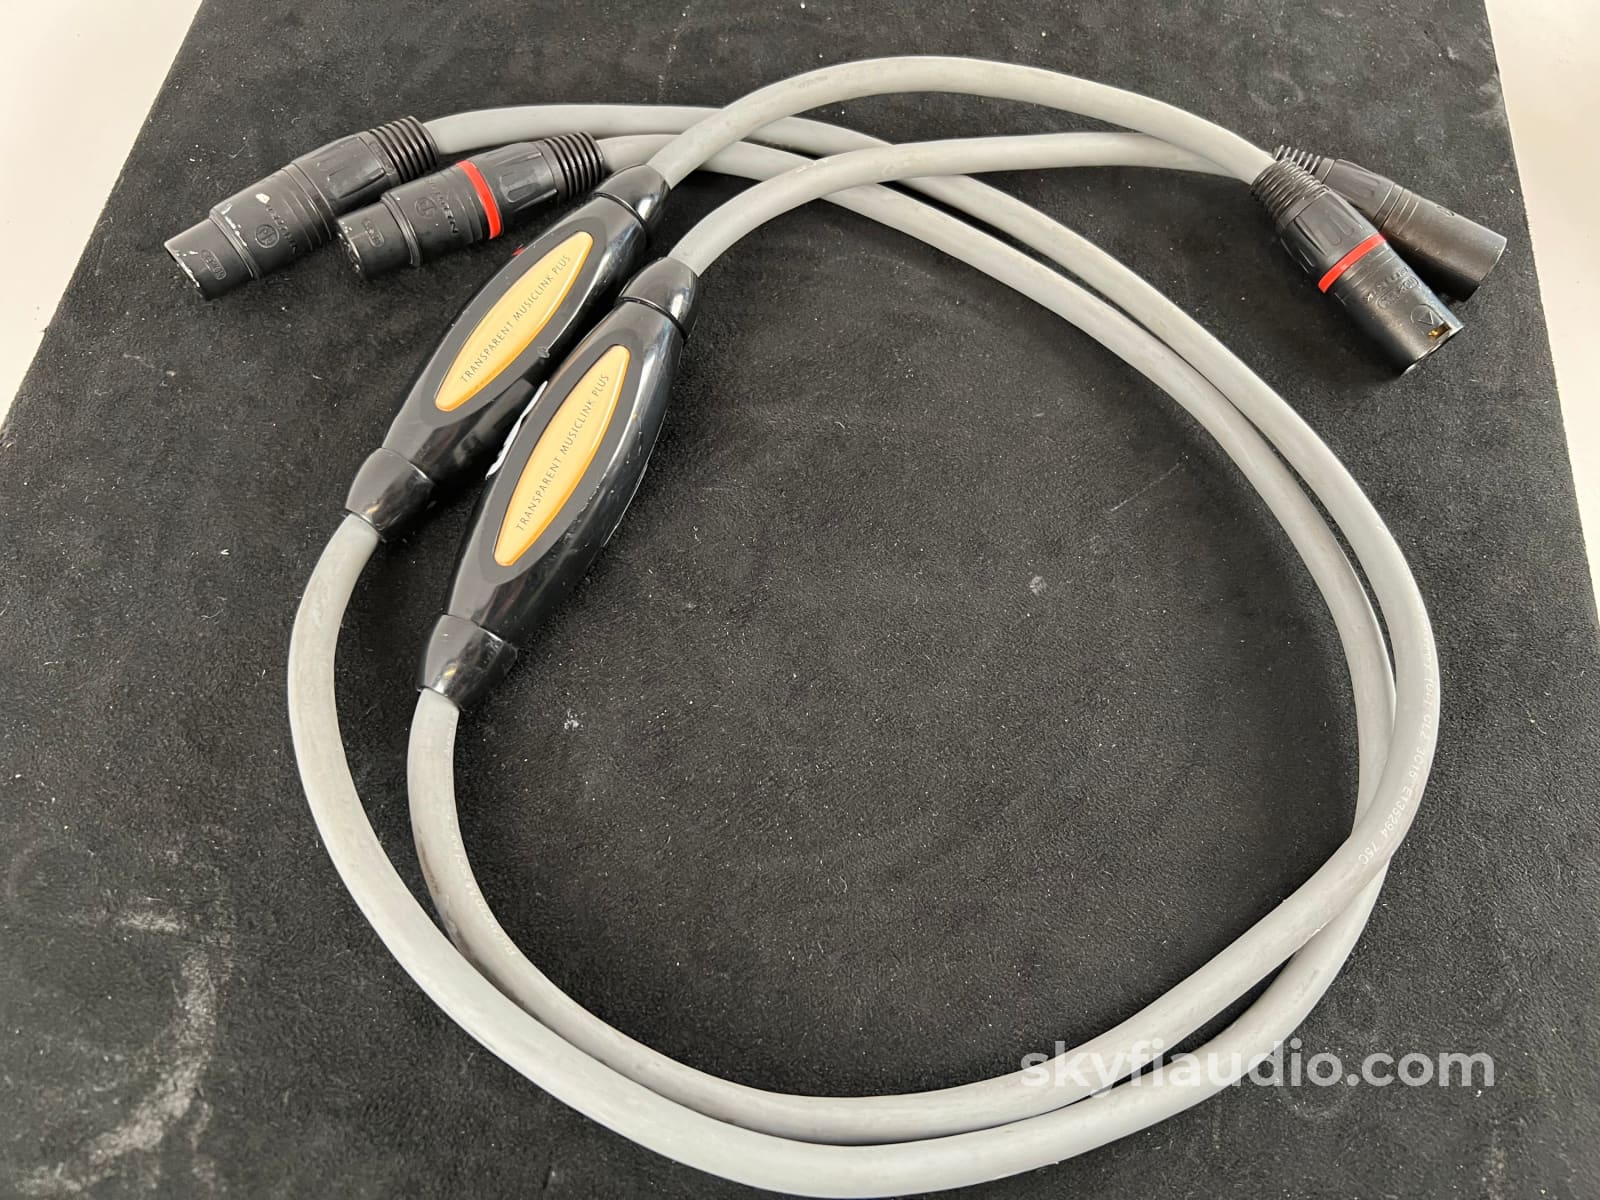 Transparent Musiclink Plus Xlr Audio Interconnects - 1M Cables